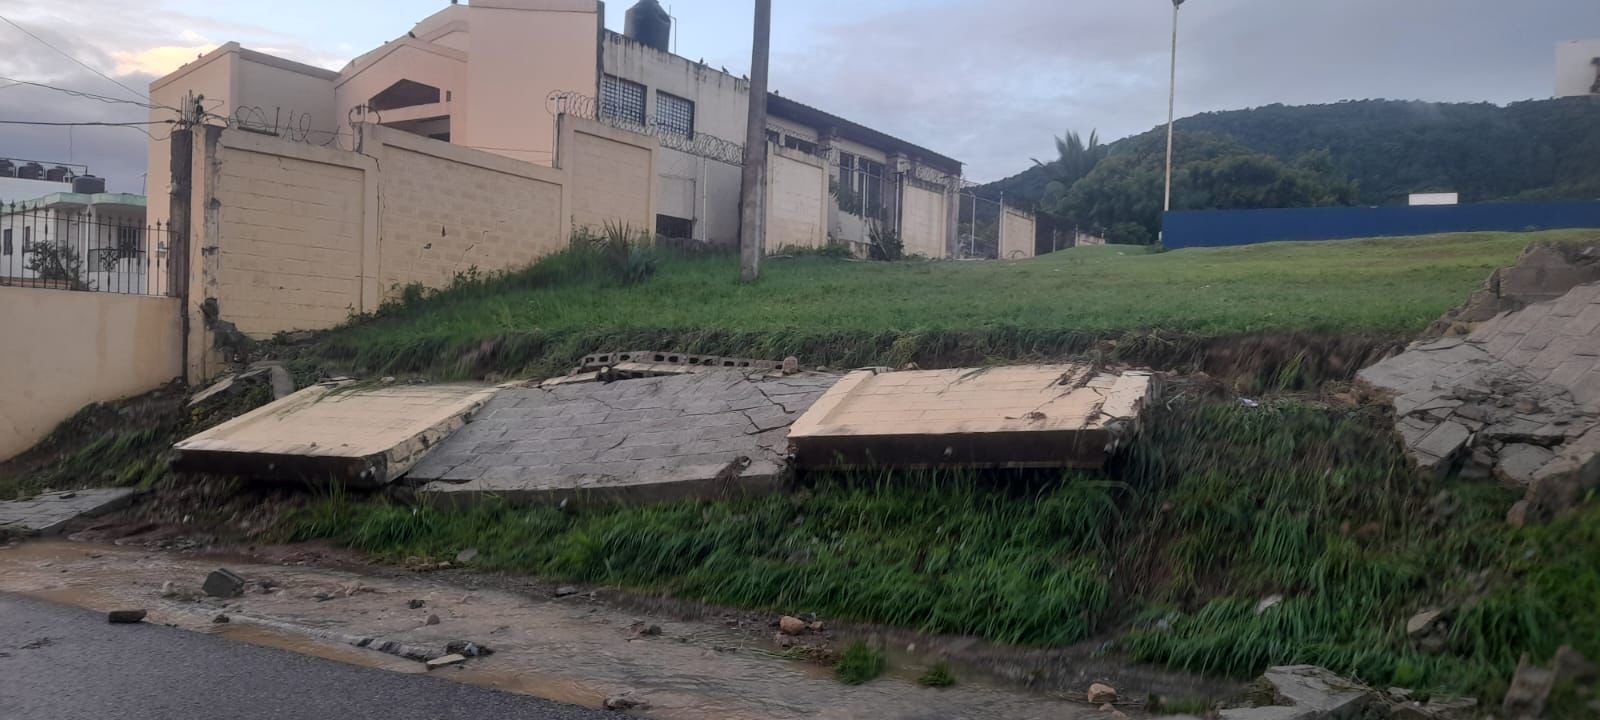  Por fuertes lluvias colapsa verja perimetral de escuela de Puerto Plata, se registran derrumbes en carretera turística Luperón